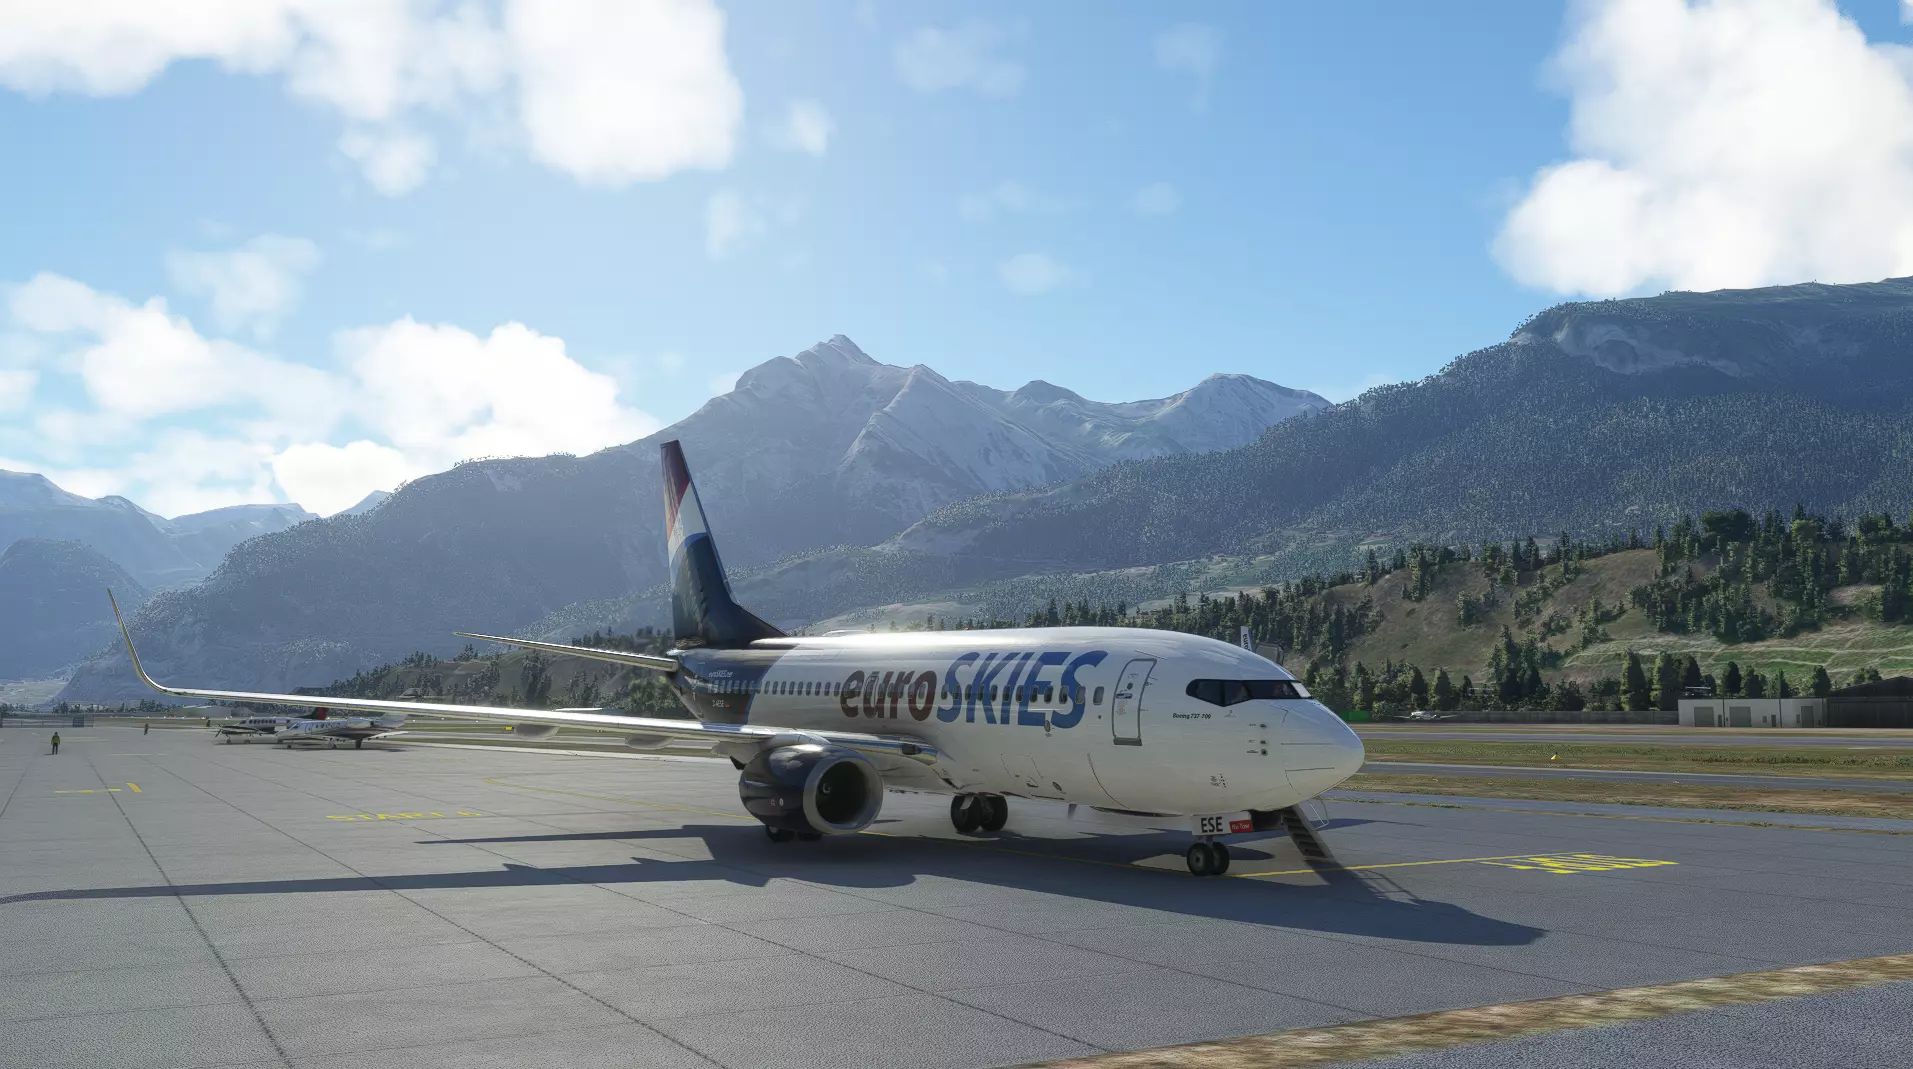 euroSKIES virtual airline Boeing bereit für den Flugbetrieb vor dem Gebirgskamm